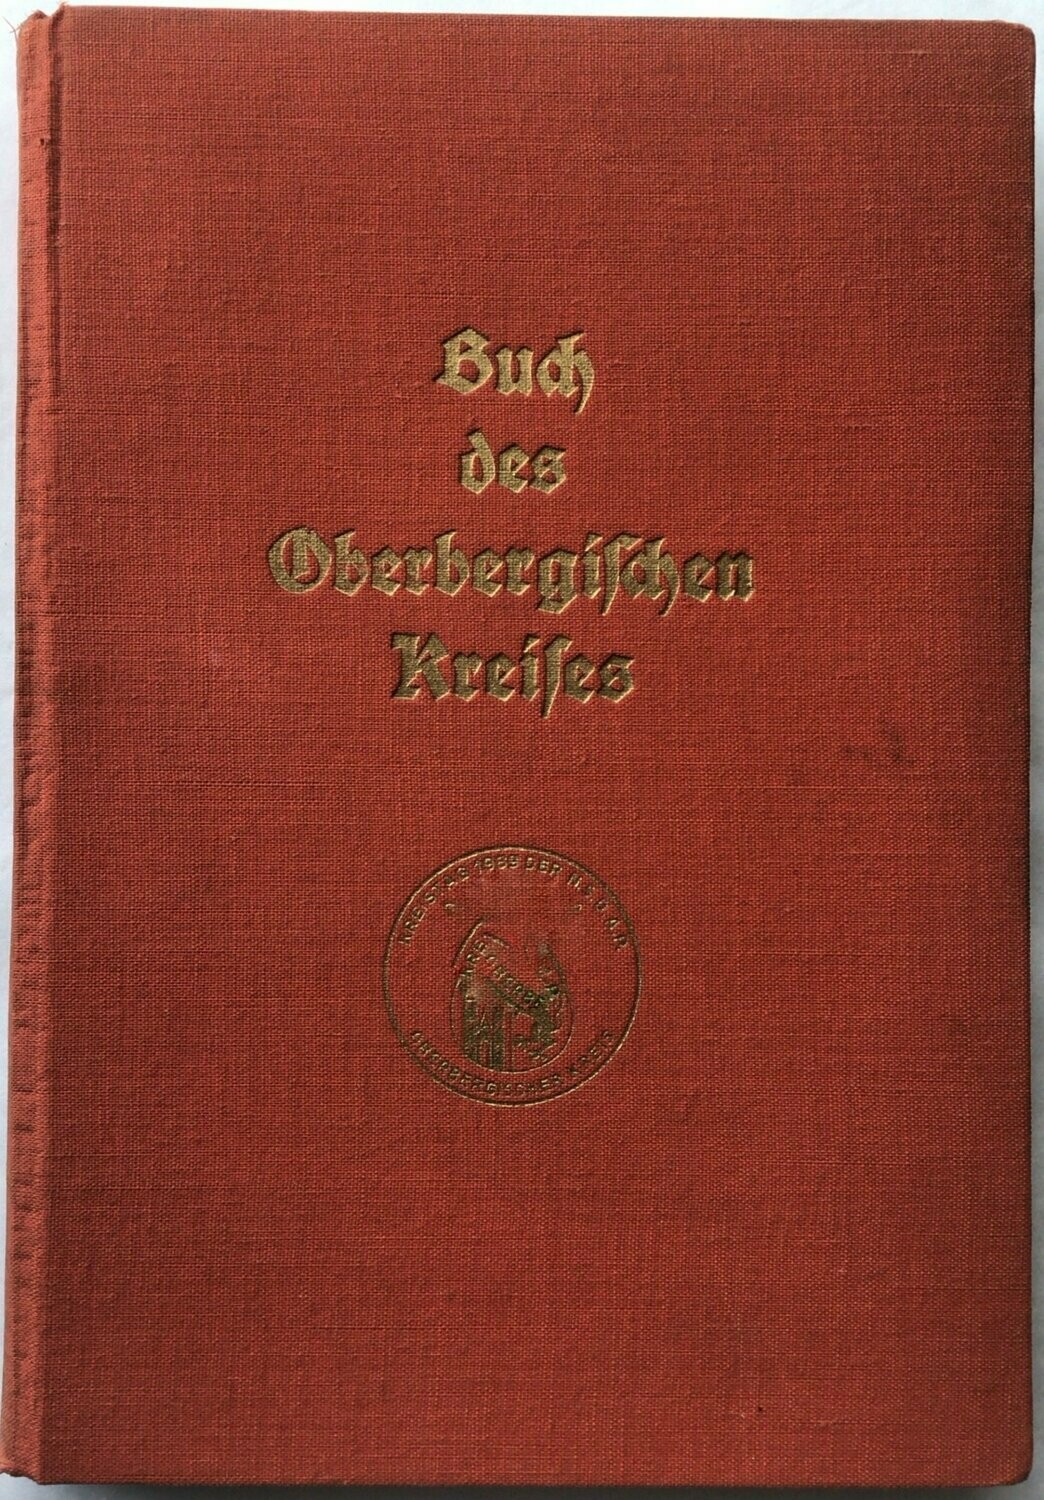 Kreisleitung der NSDAP Oberbergischer Kreis: Das Buch des oberbergischen Kreises - Ganzleinenausgabe aus dem Jahr 1939